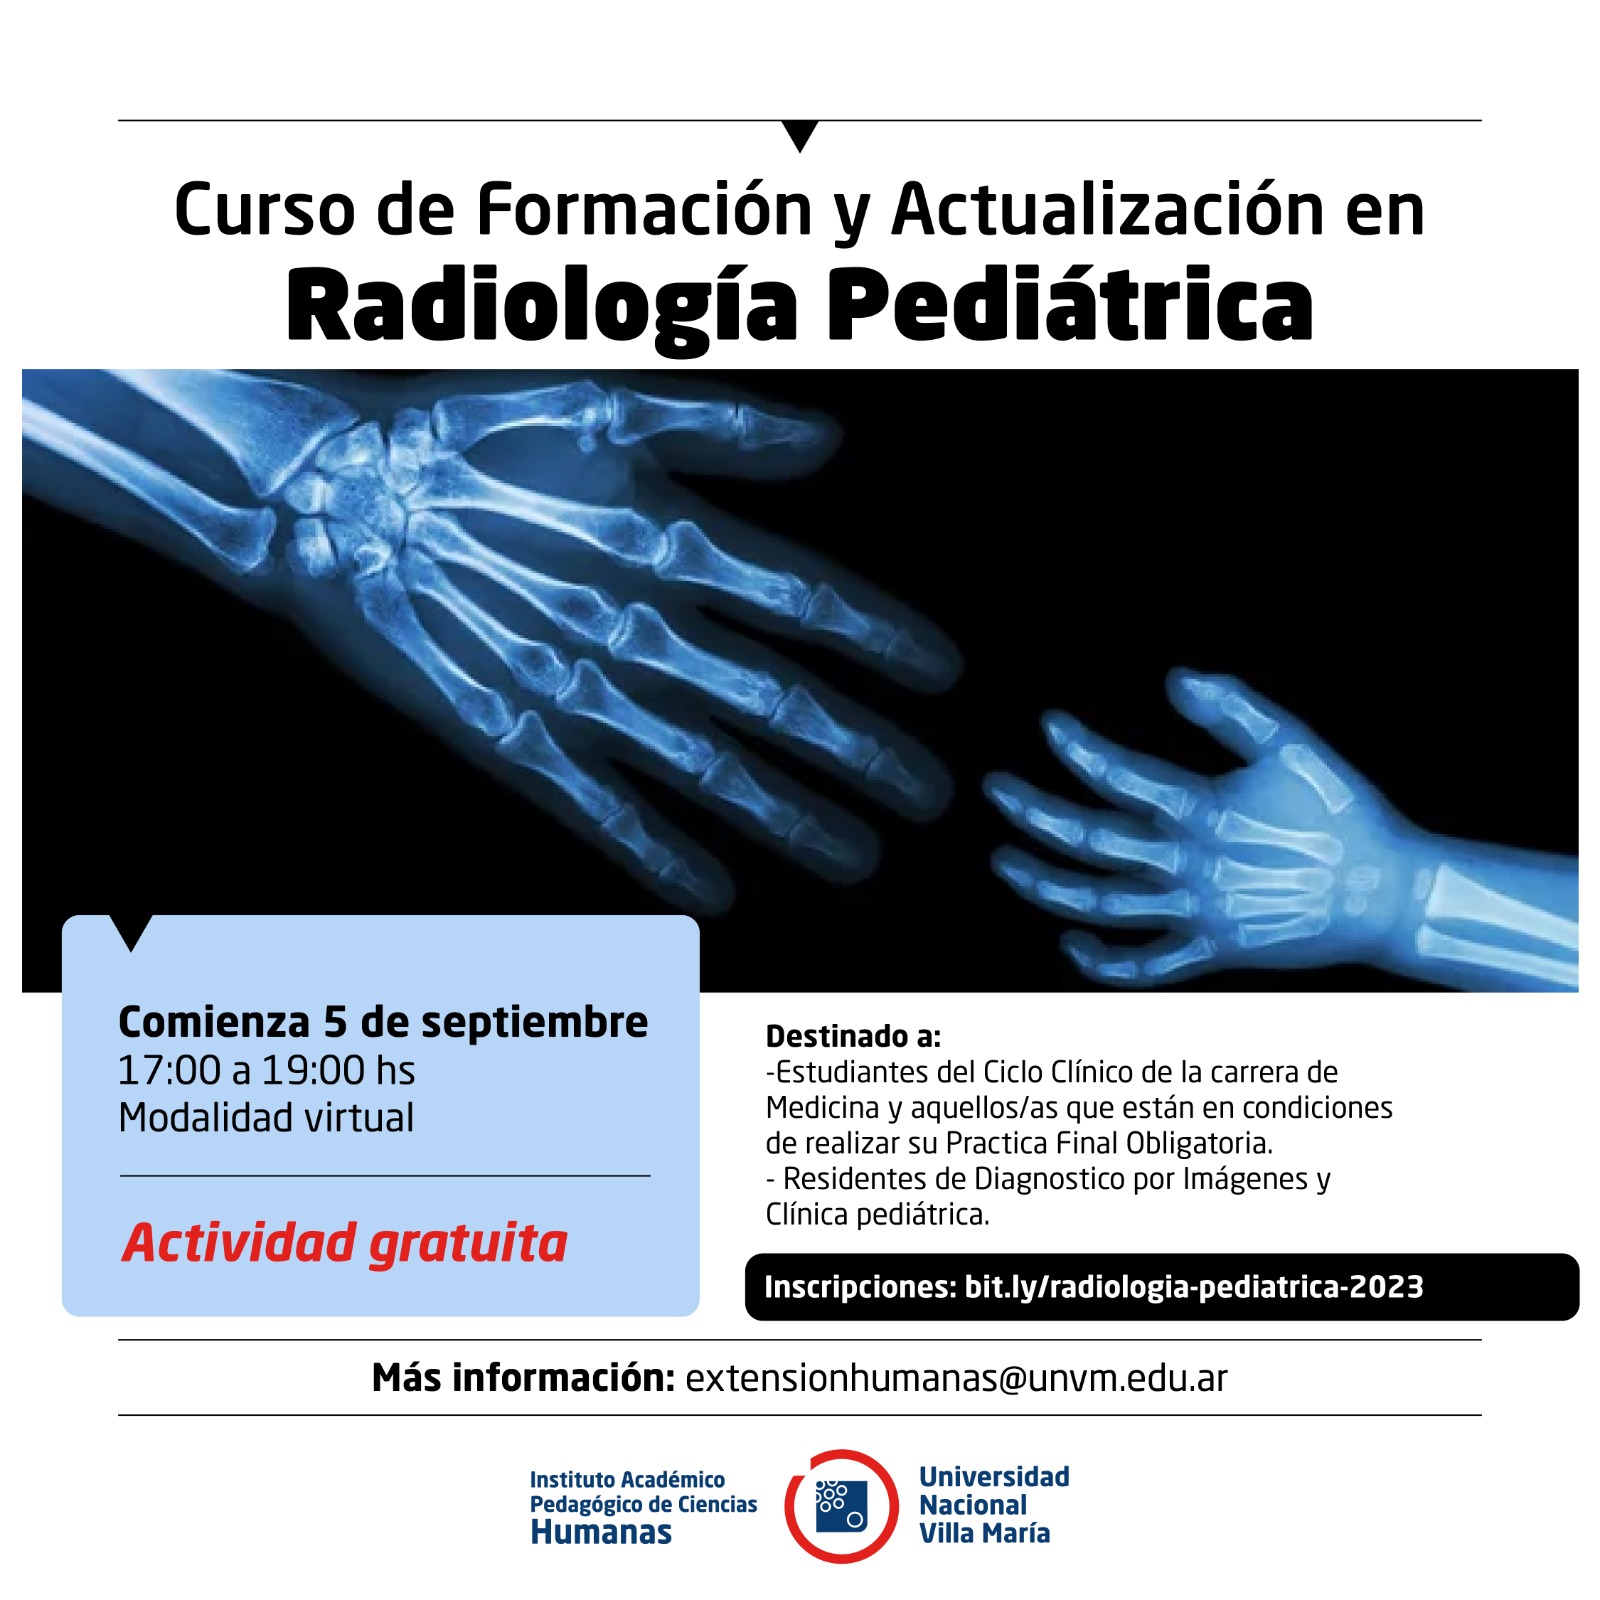 Se realizará el Curso de Formación y Actualización en Radiología Pediátrica